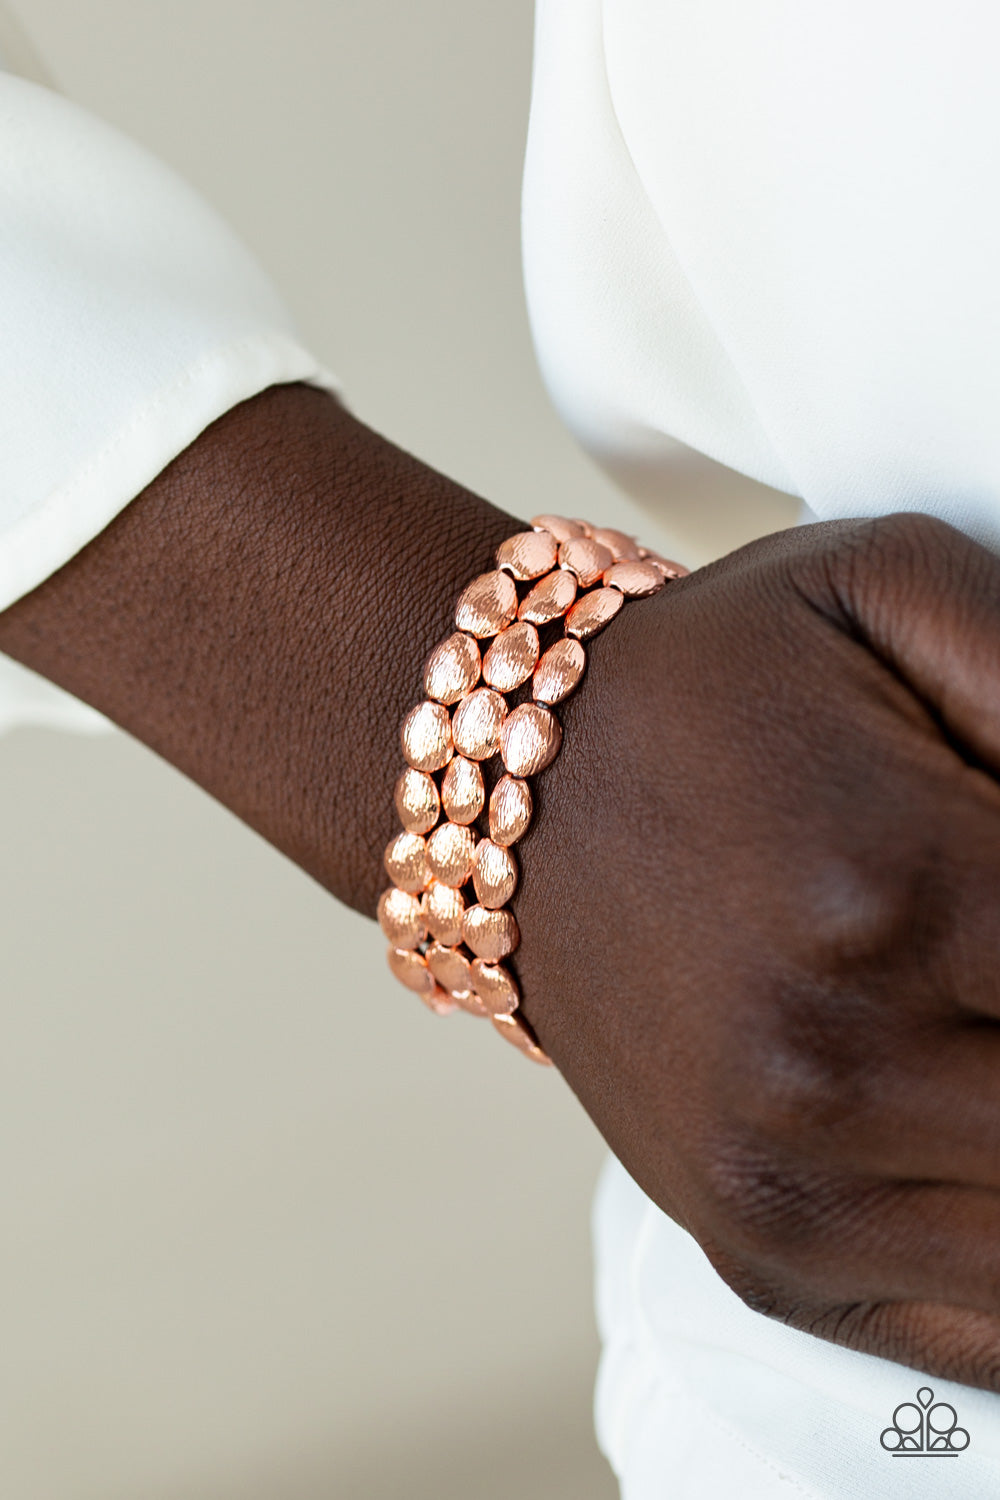 Buy Irayasha 'The Blossom Bliss Bracelet' Natural Crystal Gem Stone Beads  Bracelets For Men (Reiki Enhanced Healing Bracelet) at Amazon.in